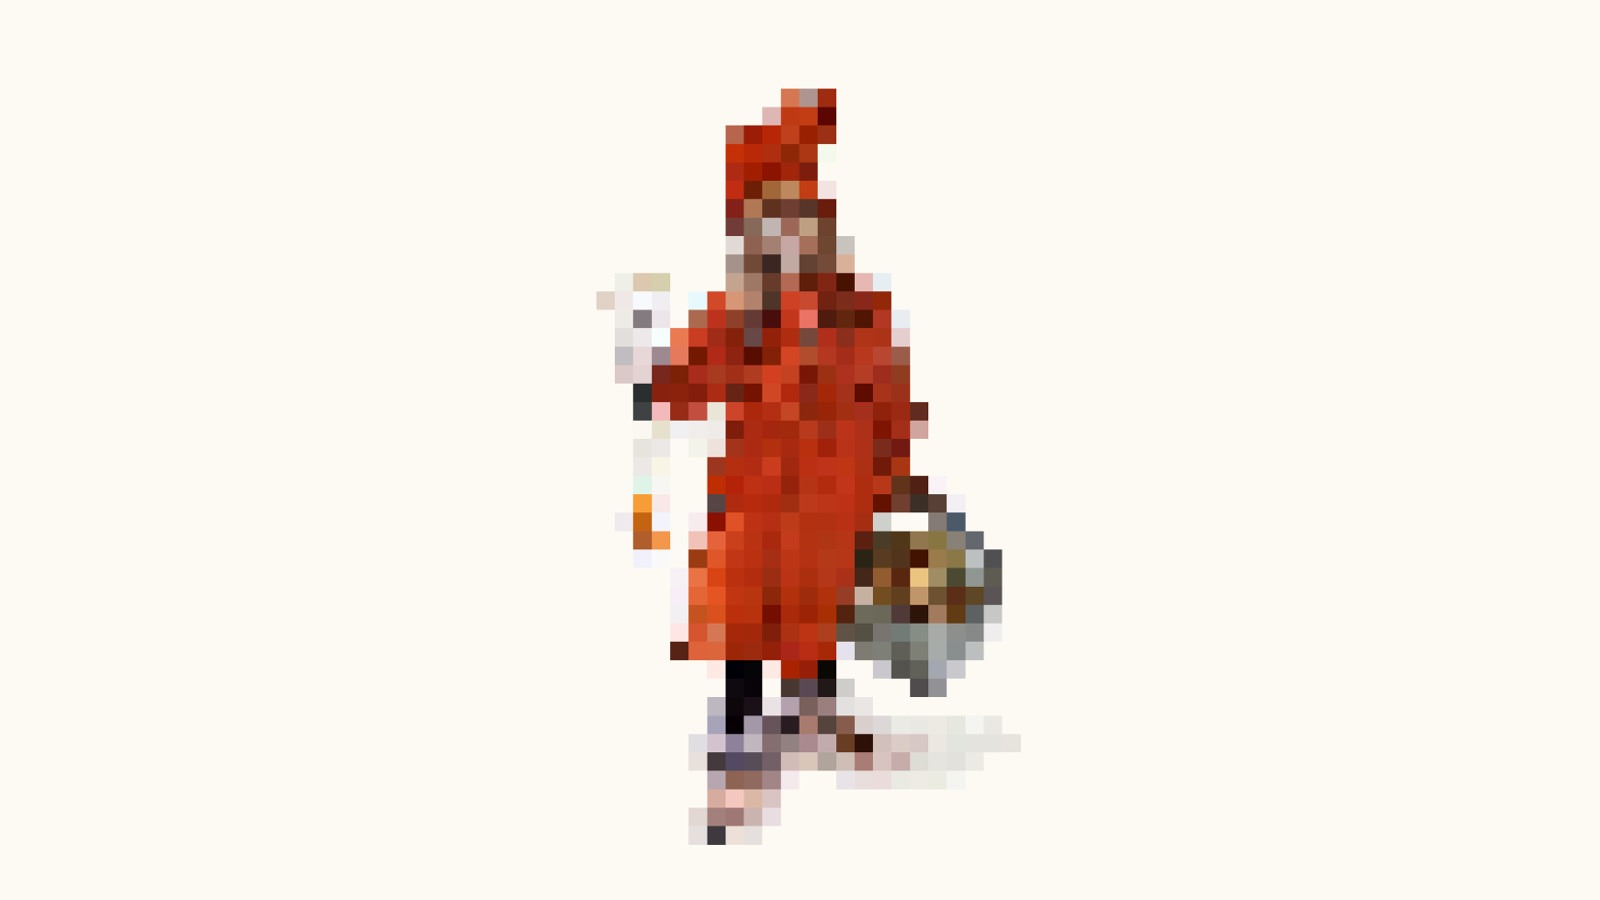 En pixlad version av den berömda målningen ”Brita som Idun” – en ung flicka i röd klänning, av Carl Larsson.